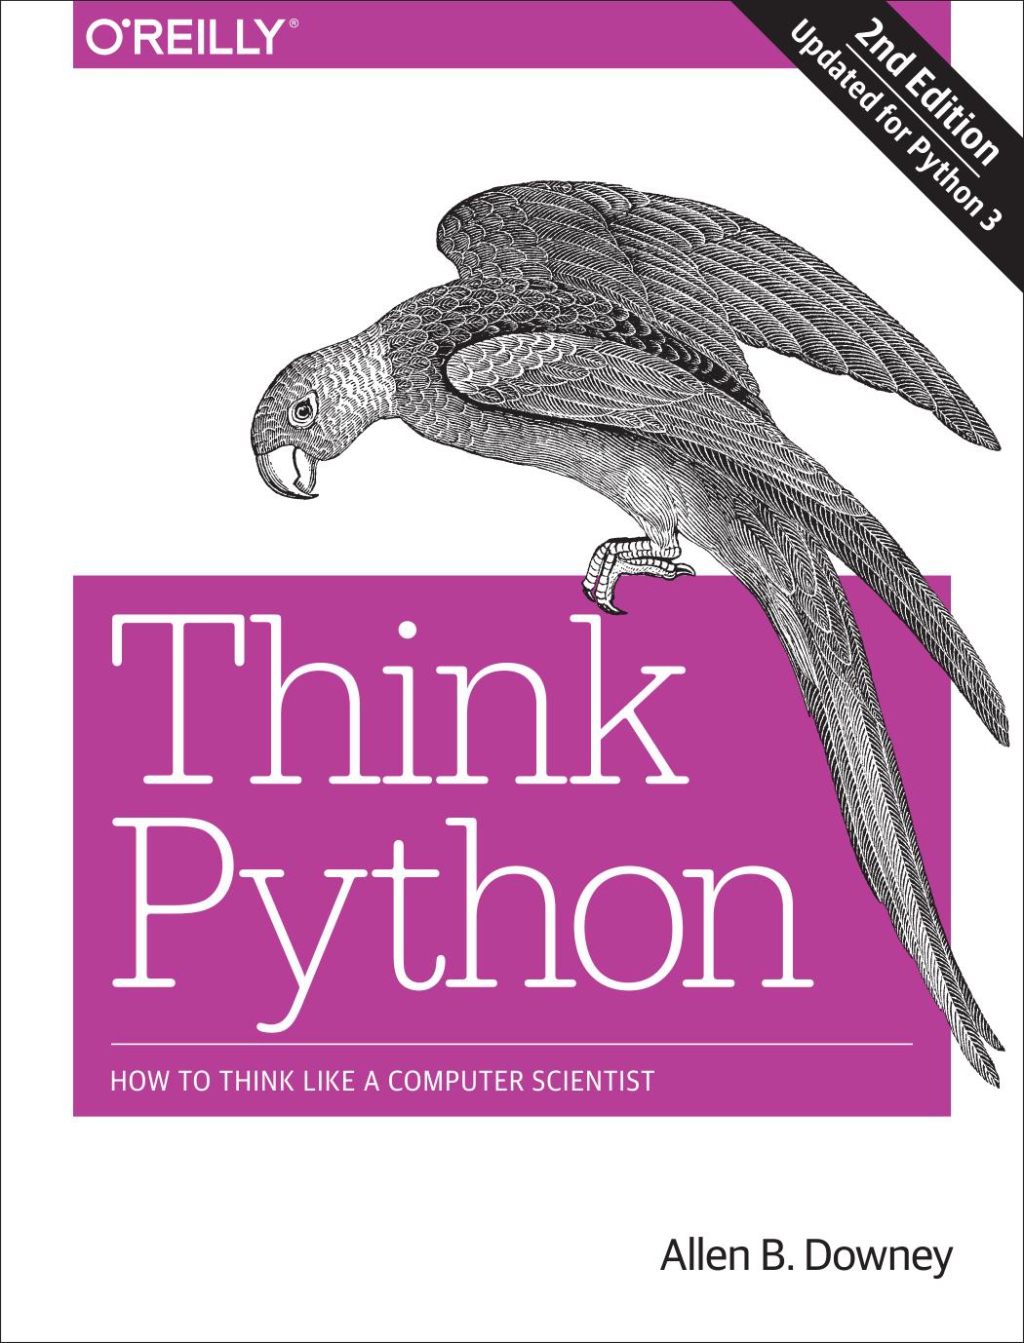 Một vài tựa sách tự học lập trình Python căn bản